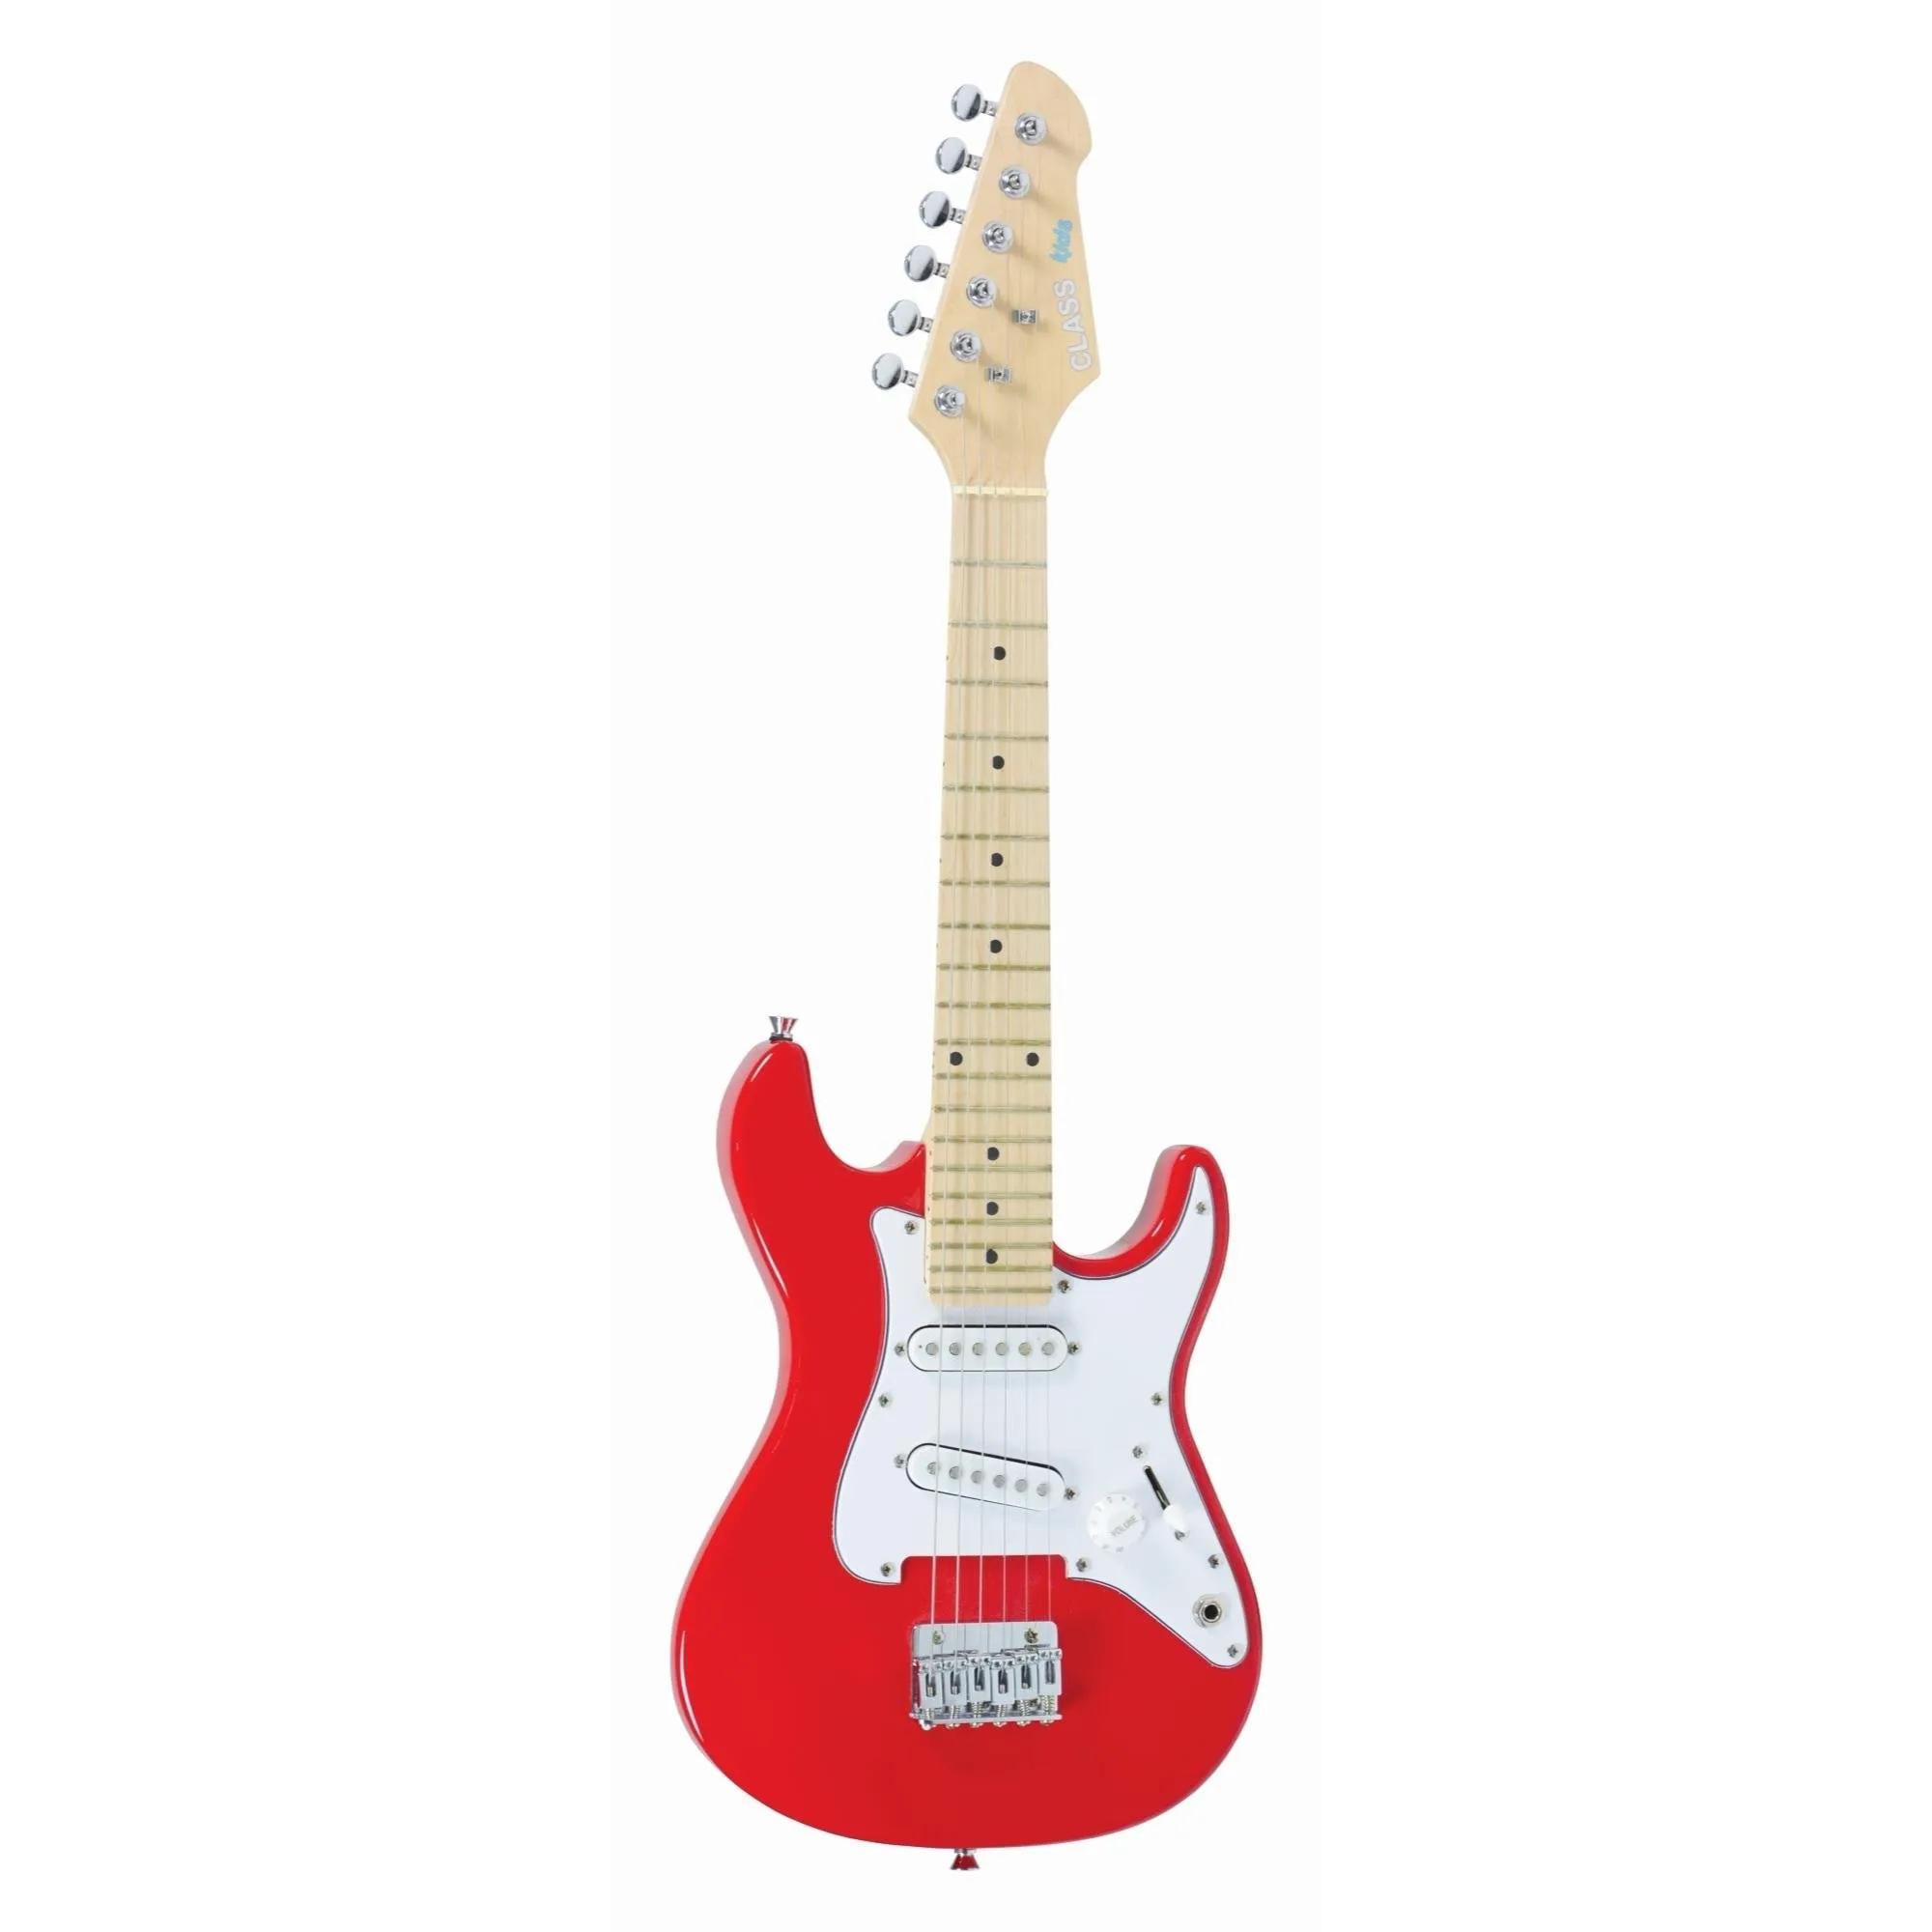 Guitarra Class Infantil CLK10 Vermelha por 599,99 à vista no boleto/pix ou parcele em até 10x sem juros. Compre na loja Mundomax!